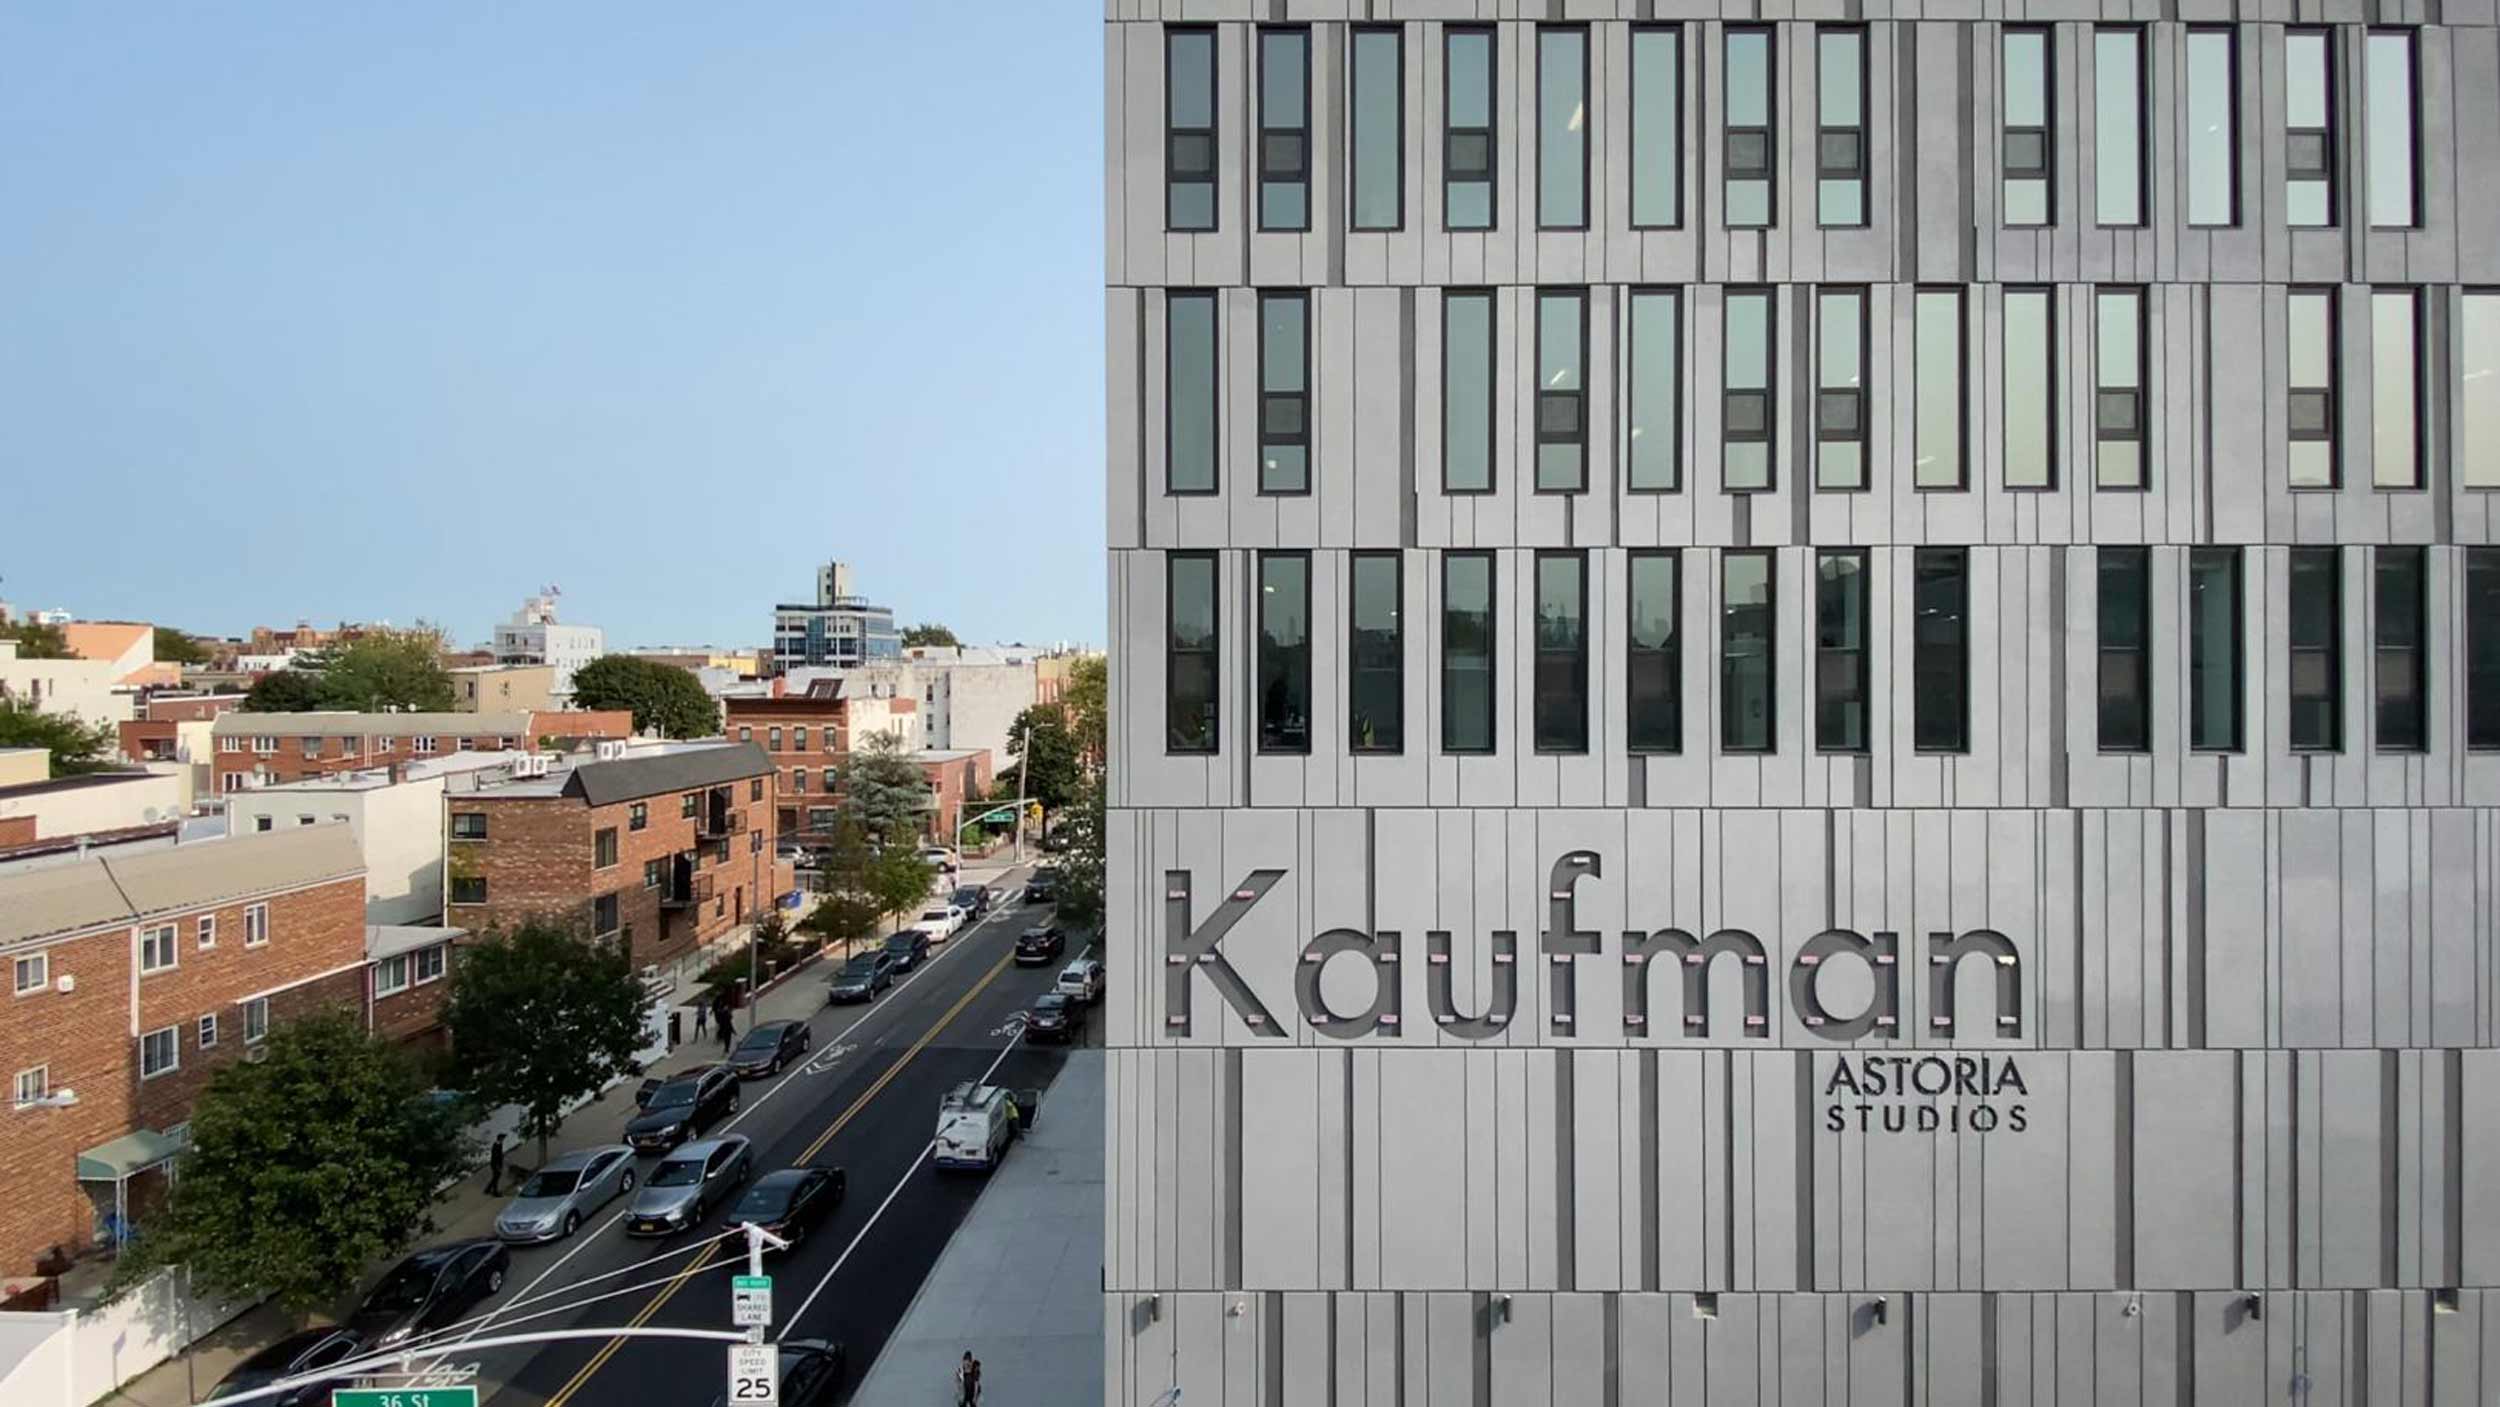 Kaufman Astoria Studios rendering of the building.